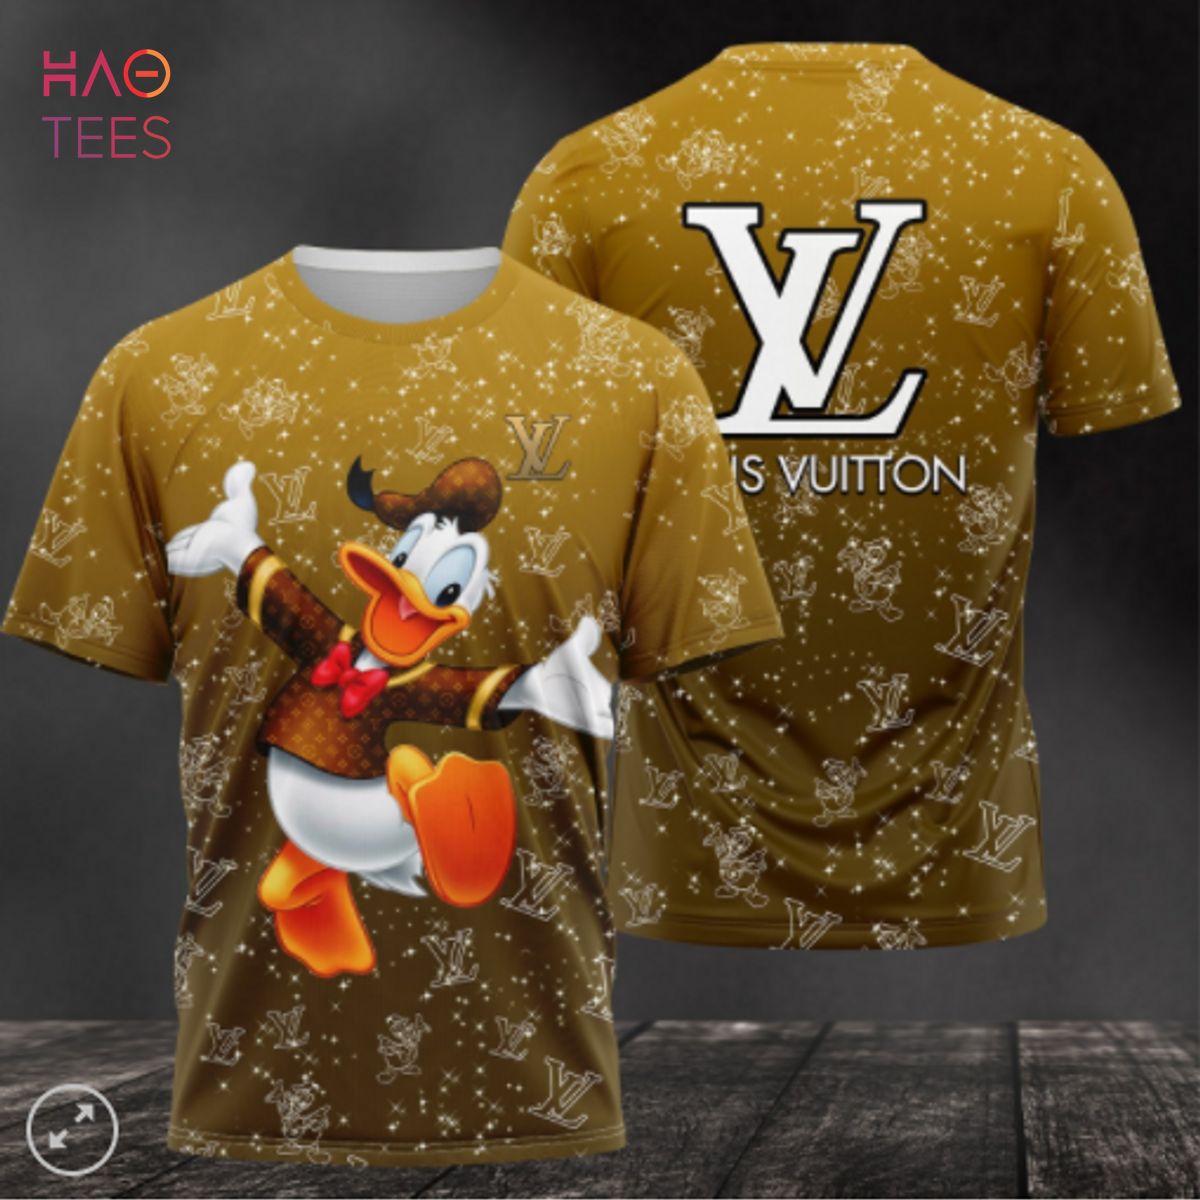 Louis Vuitton Duck Shirt Luxury for Sale in Miami, FL - OfferUp